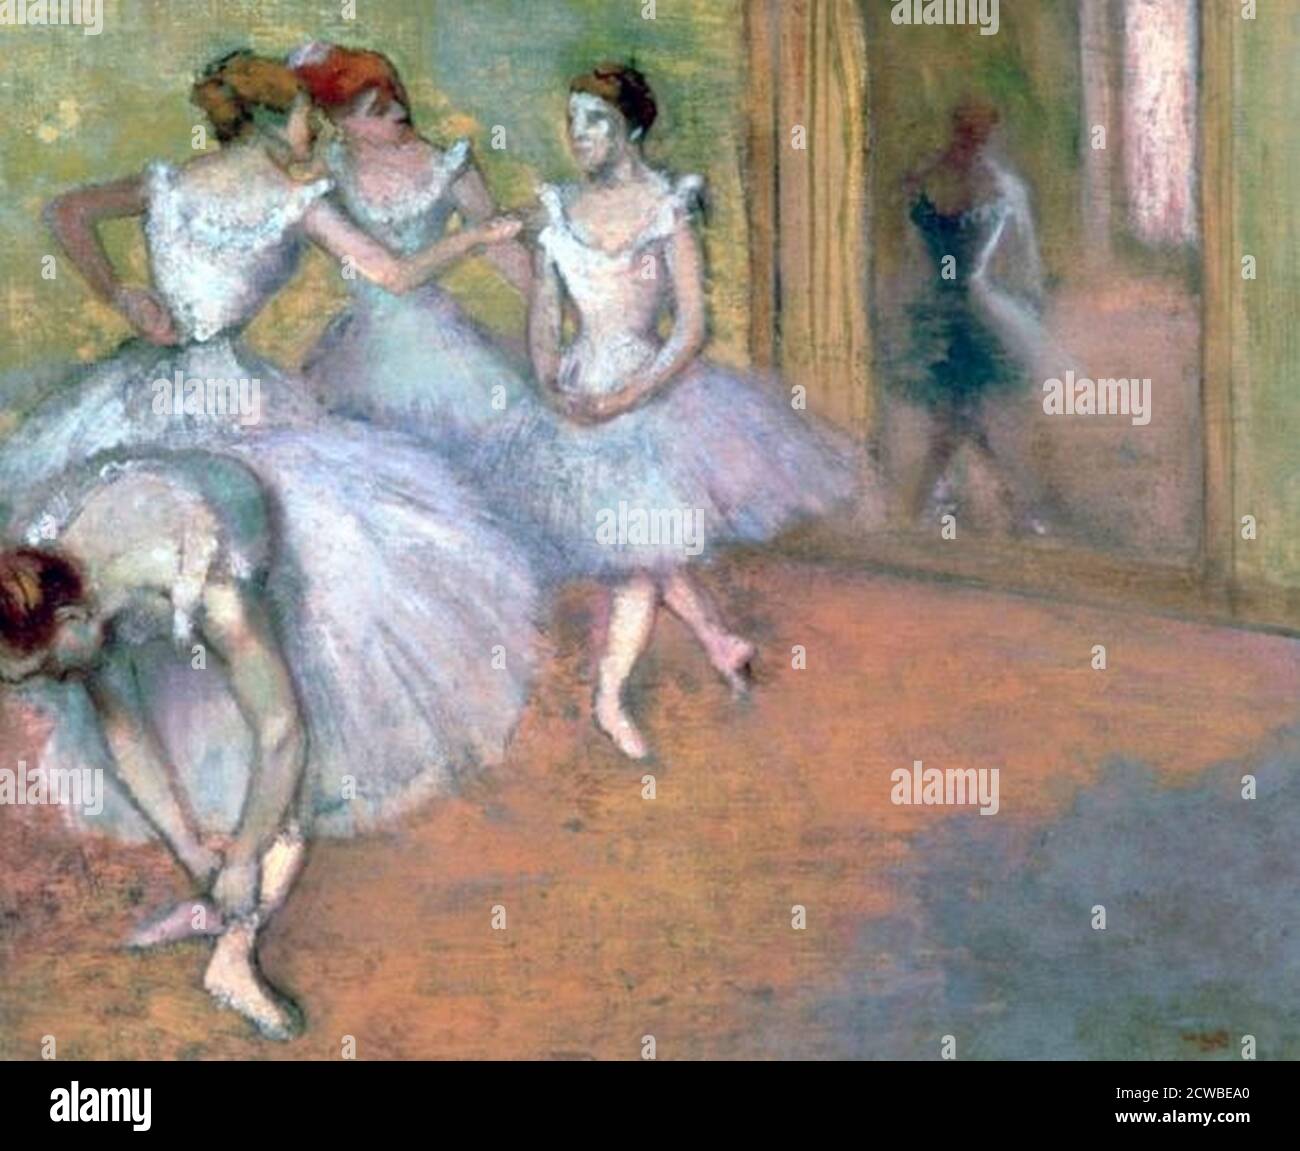 Quatre danseurs dans le foyer, fin du XIXe au début du XXe siècle. Artiste: Edgar Degas. Edgar Degas (1834-1917) est un artiste français connu pour ses dessins pastel et ses peintures à l'huile de ballerines. Degas a également produit des sculptures, des gravures et des dessins en bronze. Banque D'Images